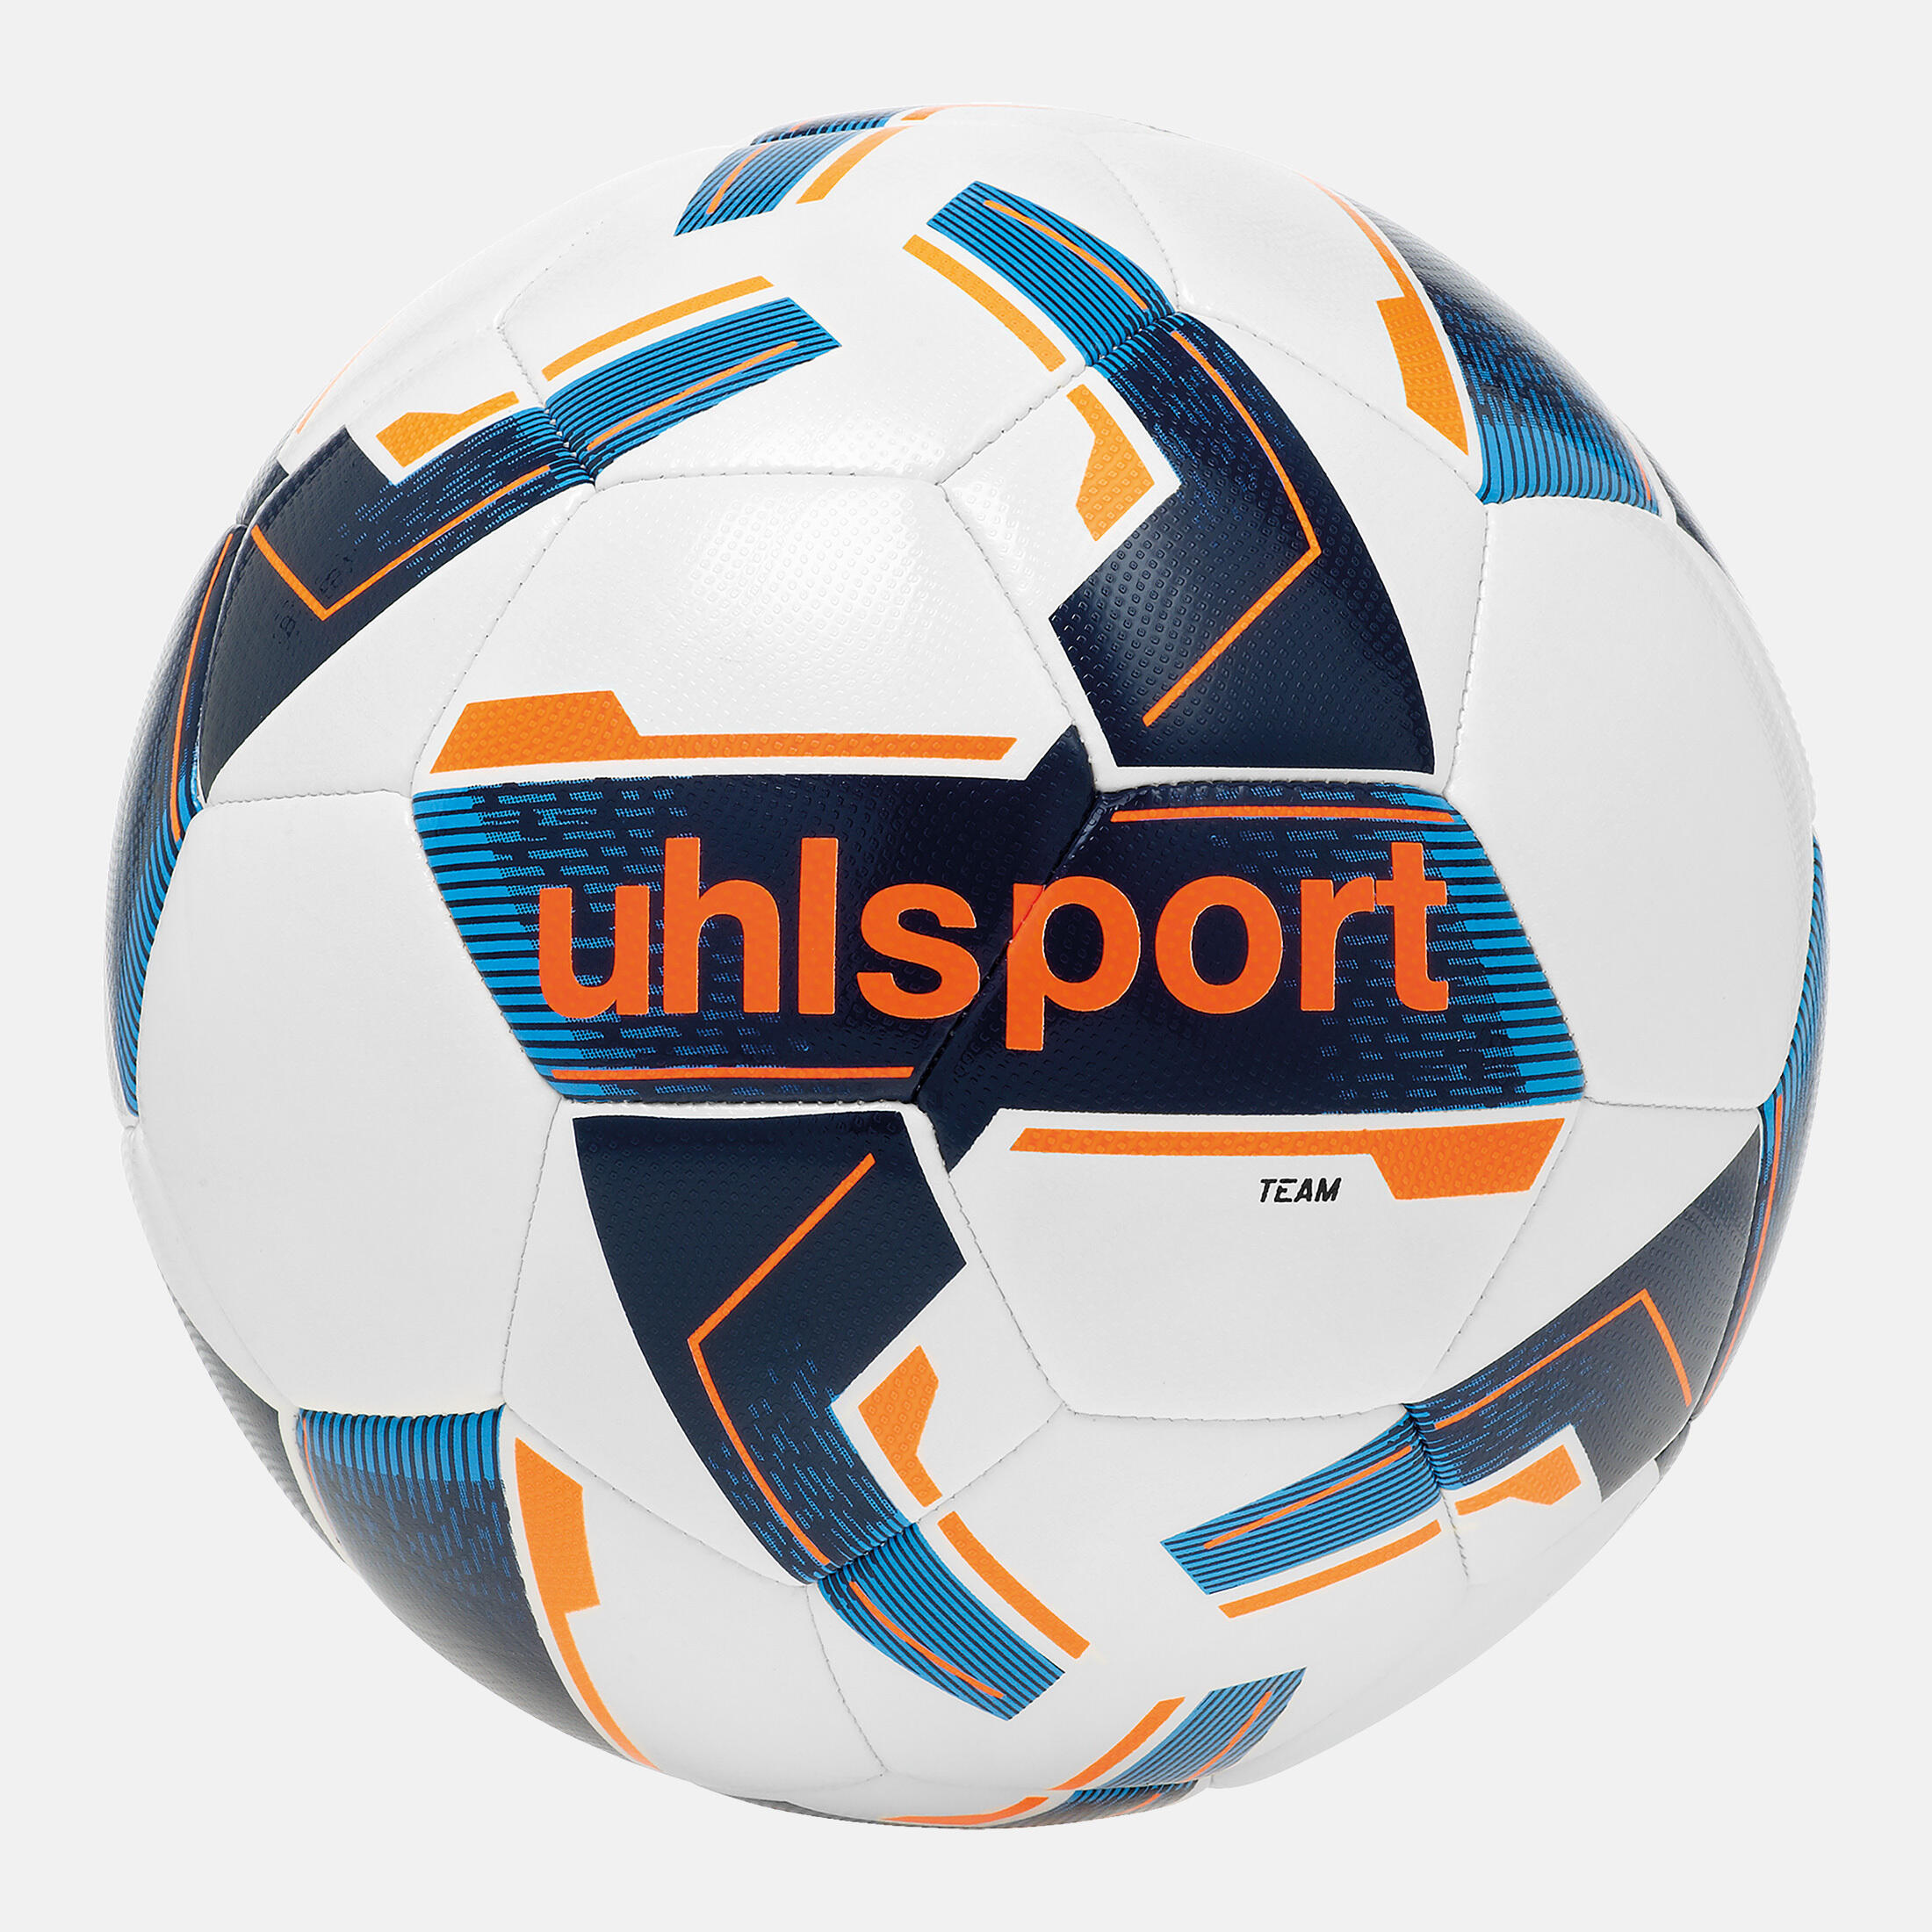 Uhlsport Team Training Football Size 5 - White 1/3